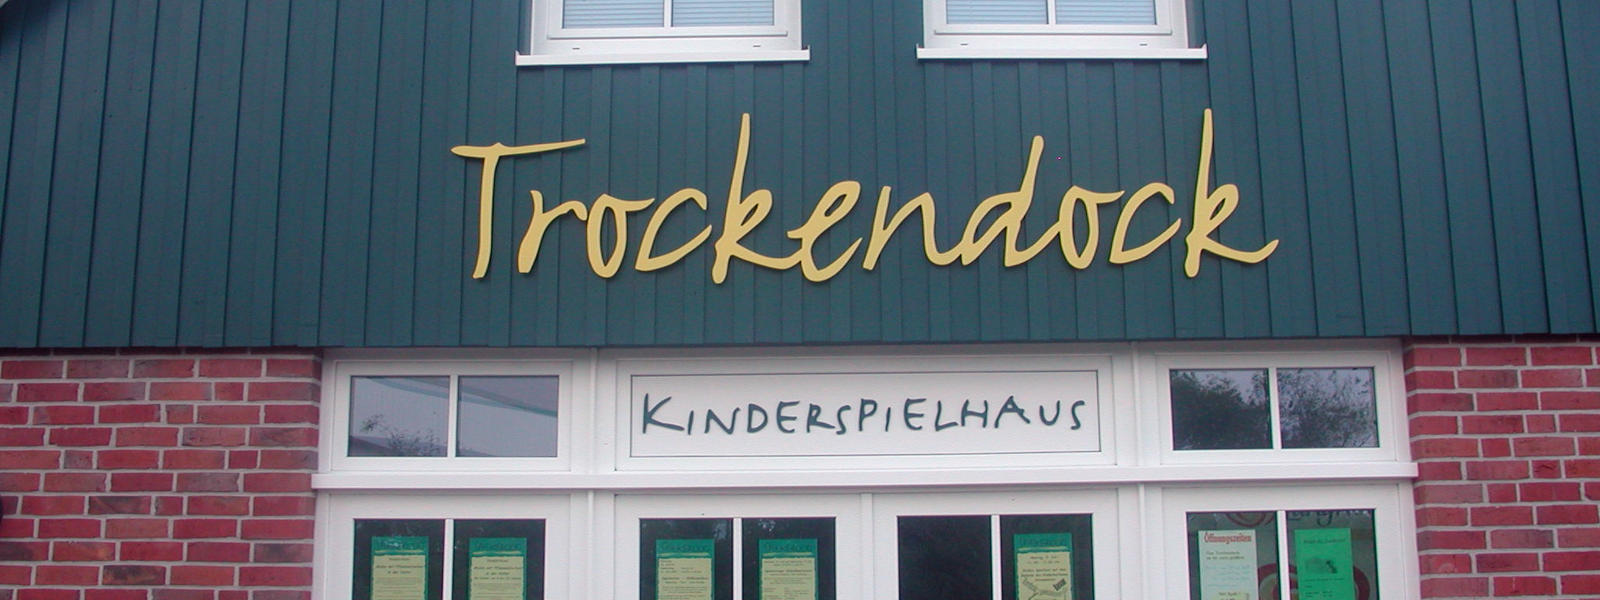 Indoor Spielplatz "Trockendock" auf Spiekeroog